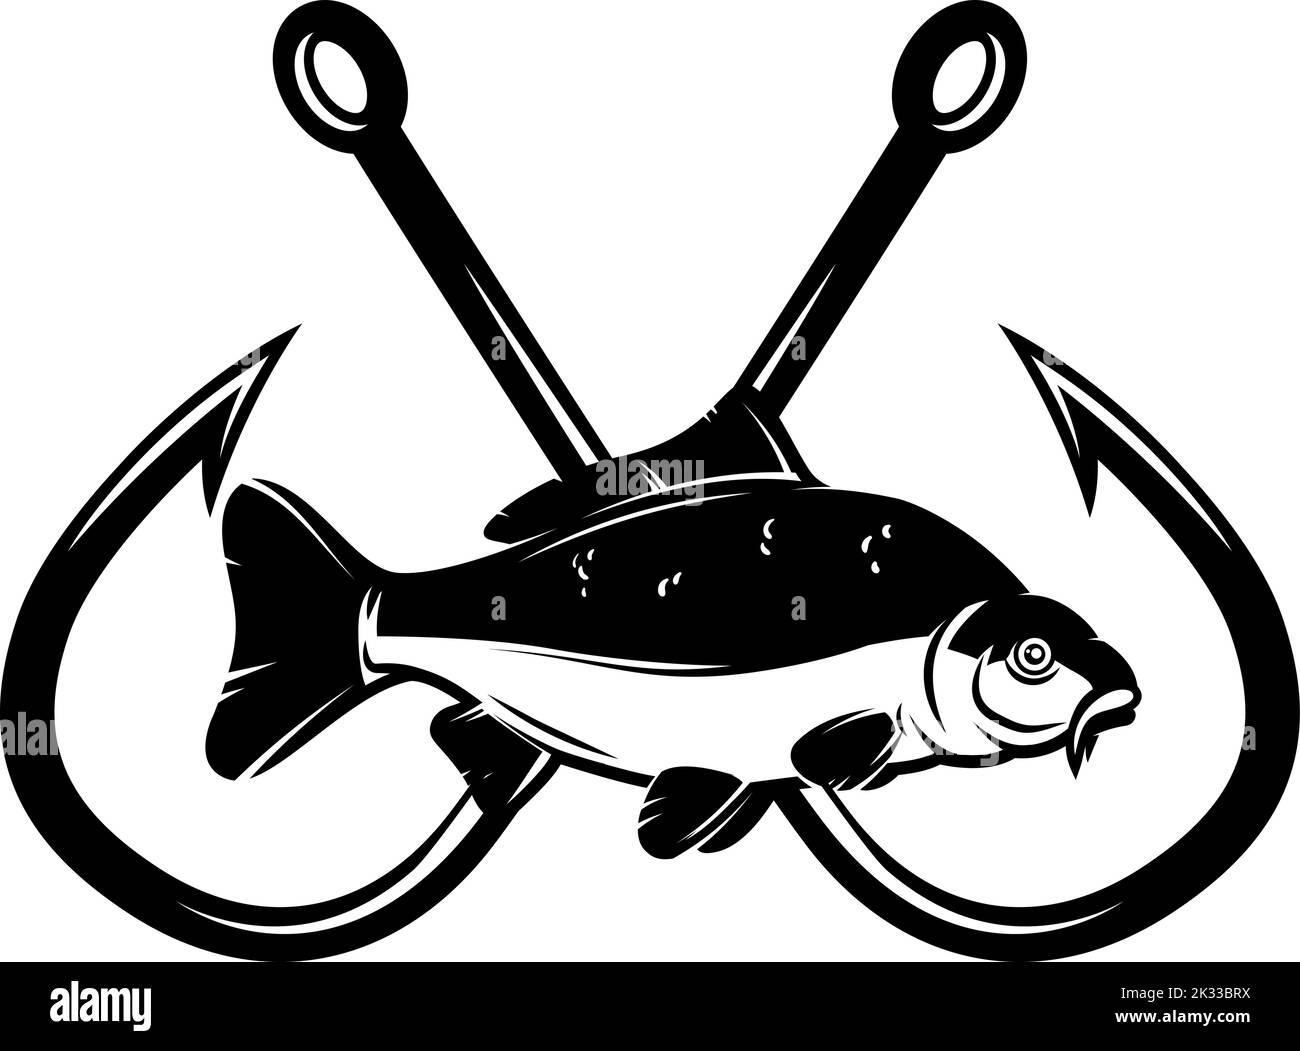 https://c8.alamy.com/comp/2K33BRX/carp-fish-with-crossed-fishing-hooks-design-element-for-logo-emblem-sign-poster-t-shirt-vector-illustration-2K33BRX.jpg